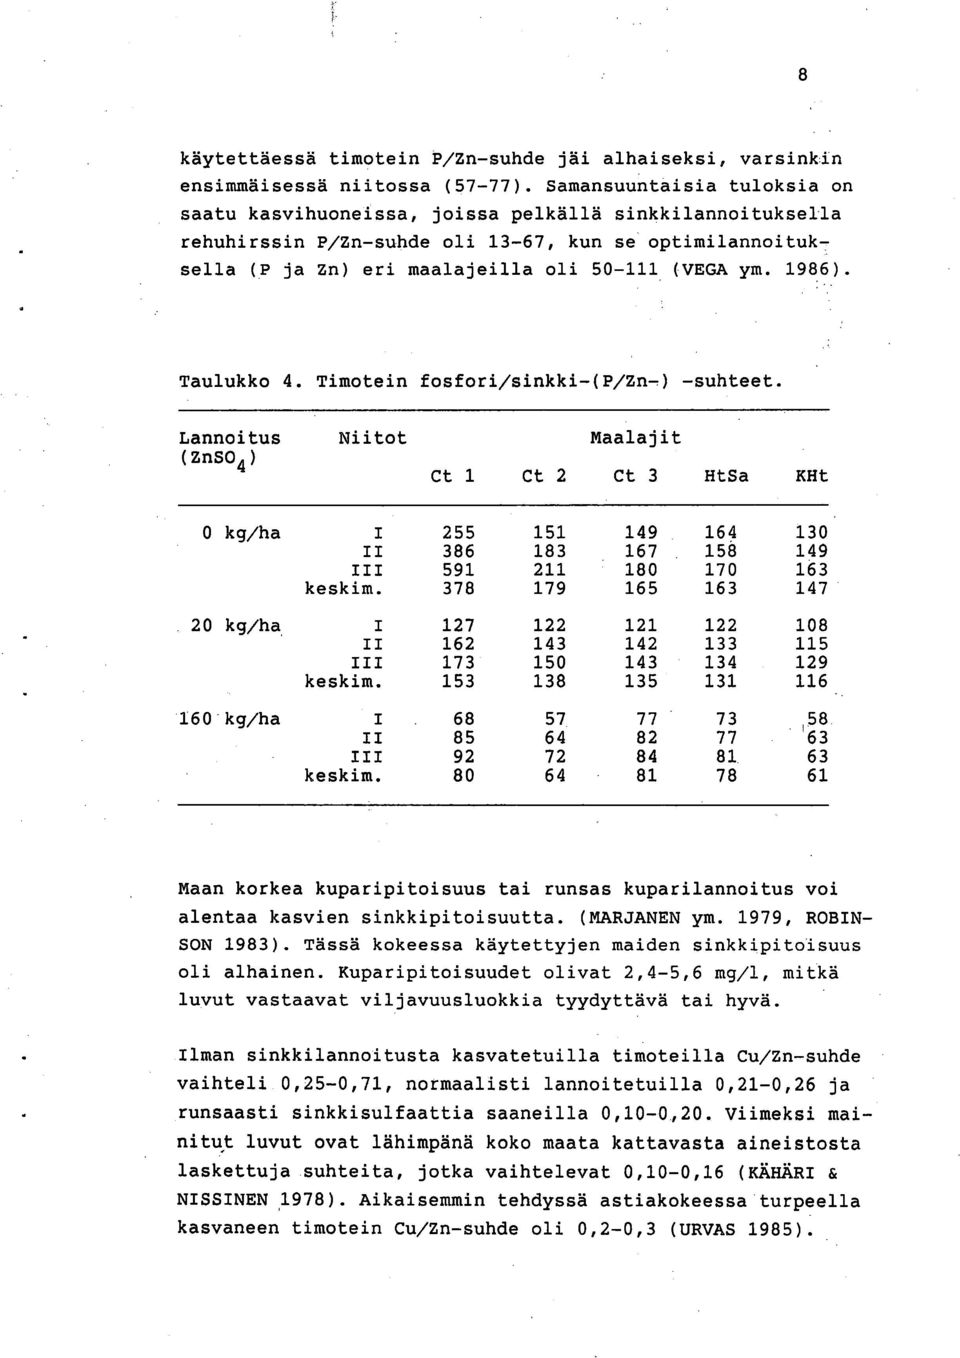 1986). Taulukko 4. Timotein fosfori/sinkki-(p/zn-) -suhteet.